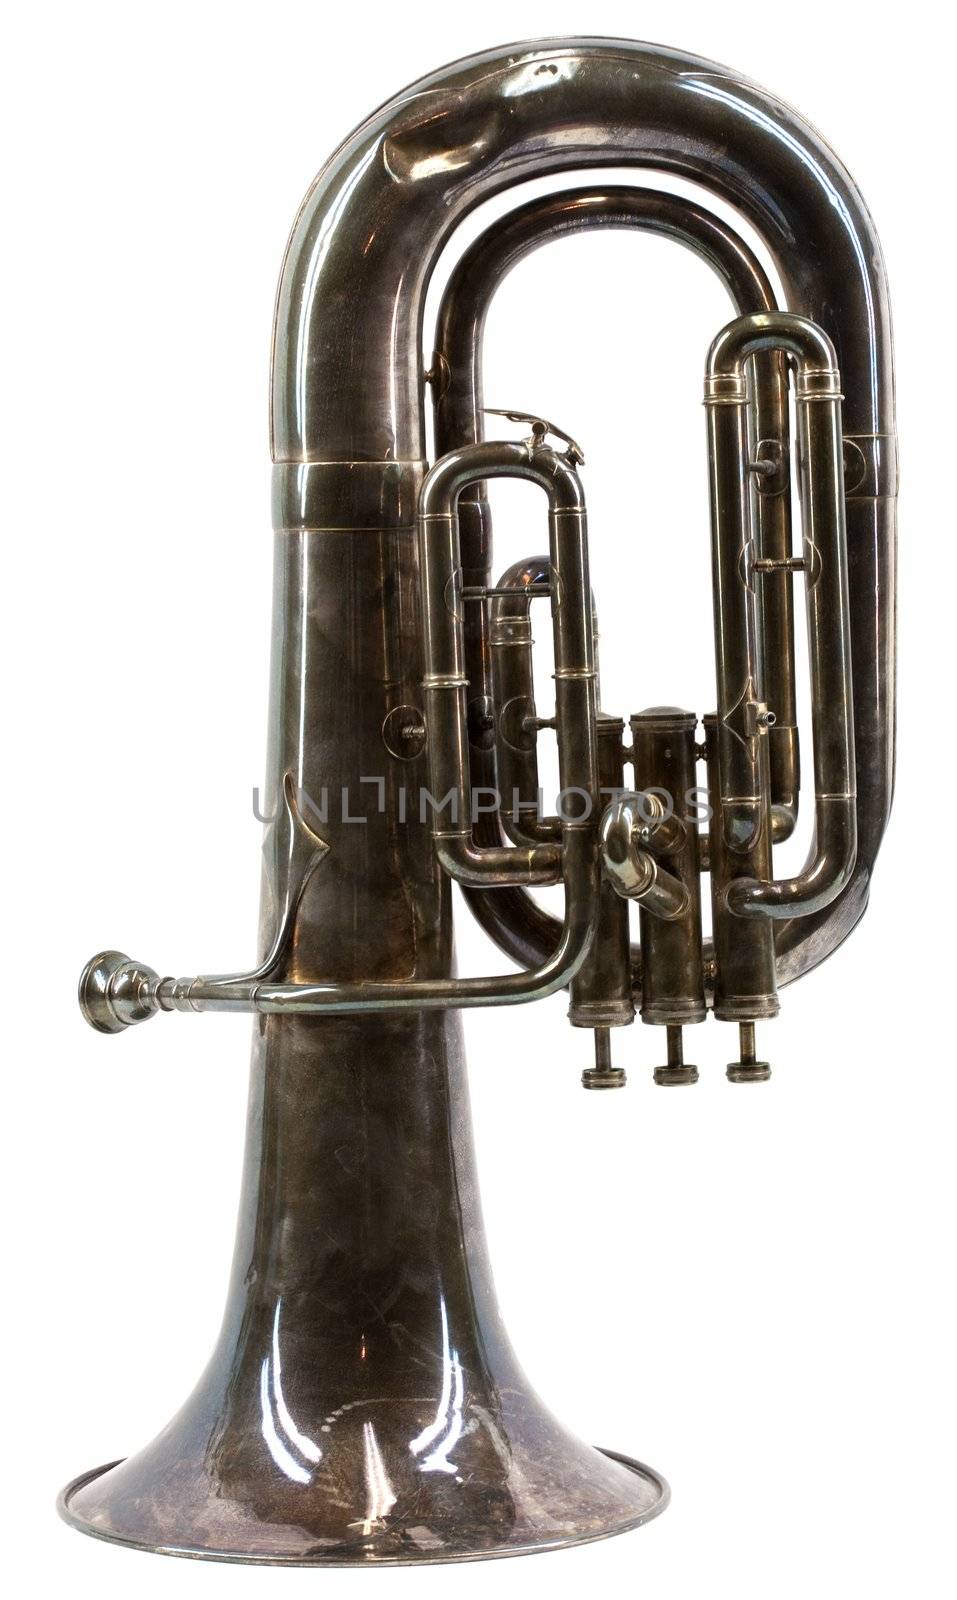 Old vintage euphonium isolated on white background